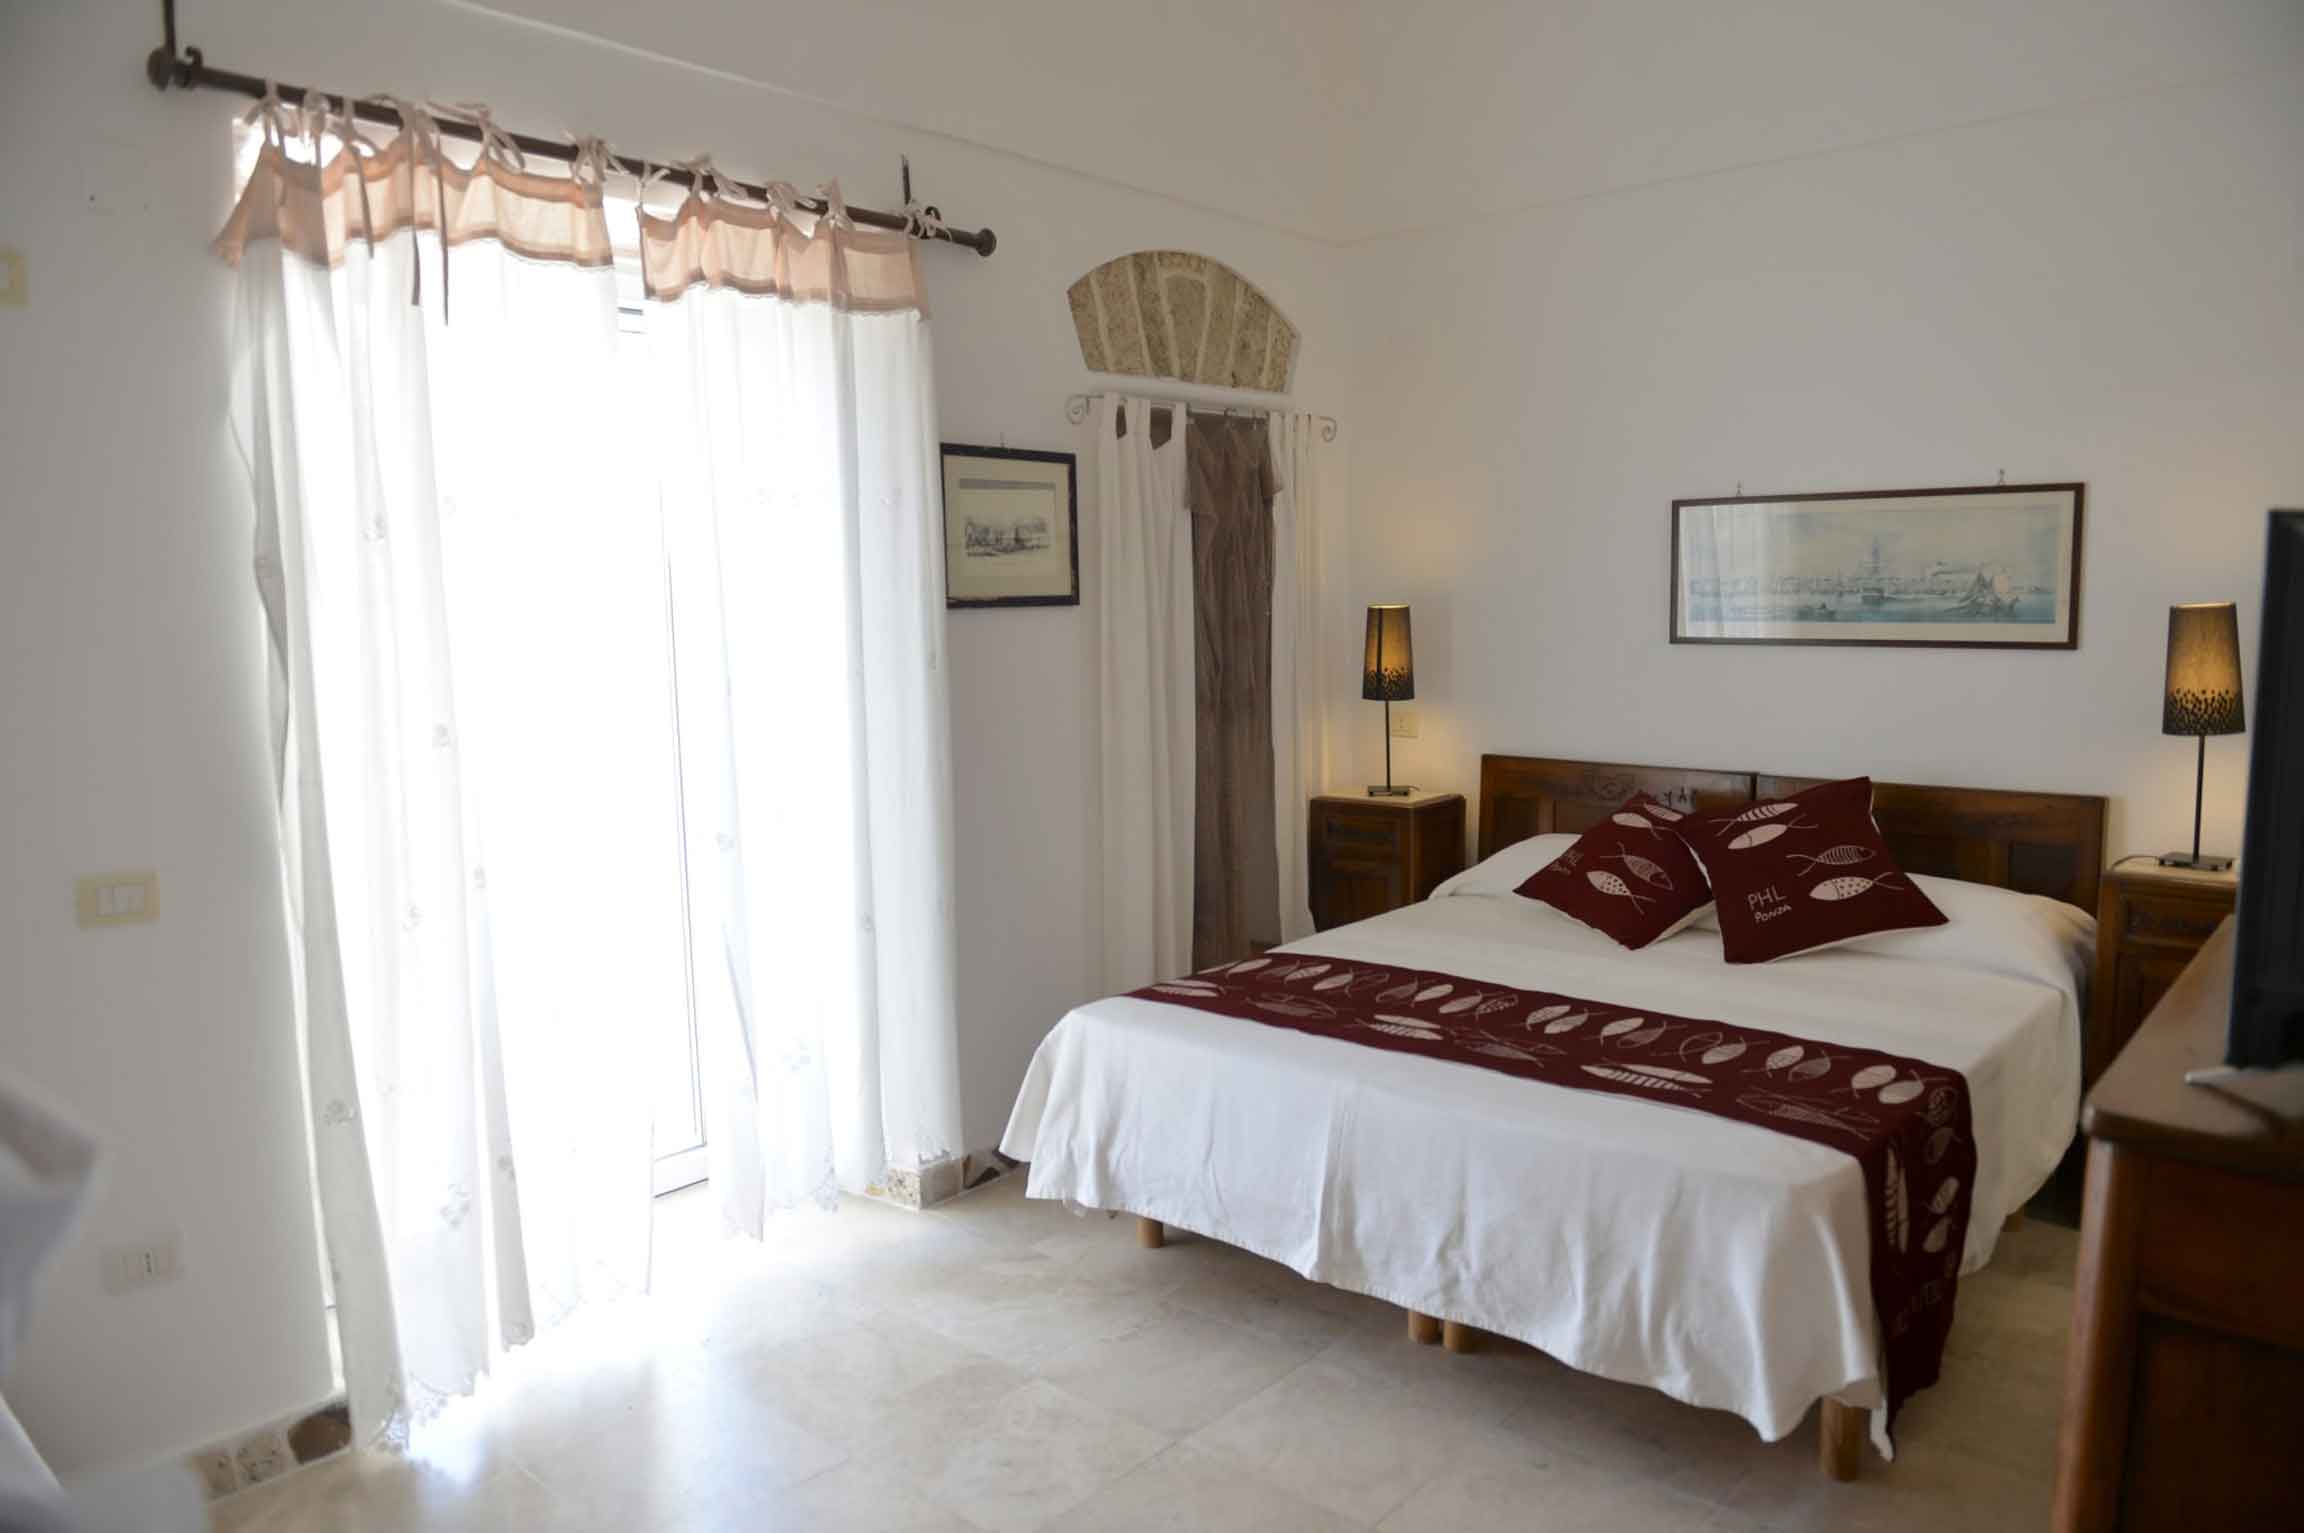 Piccolo Hotel Luisa - camere, ristorante e barche a Ponza Porto